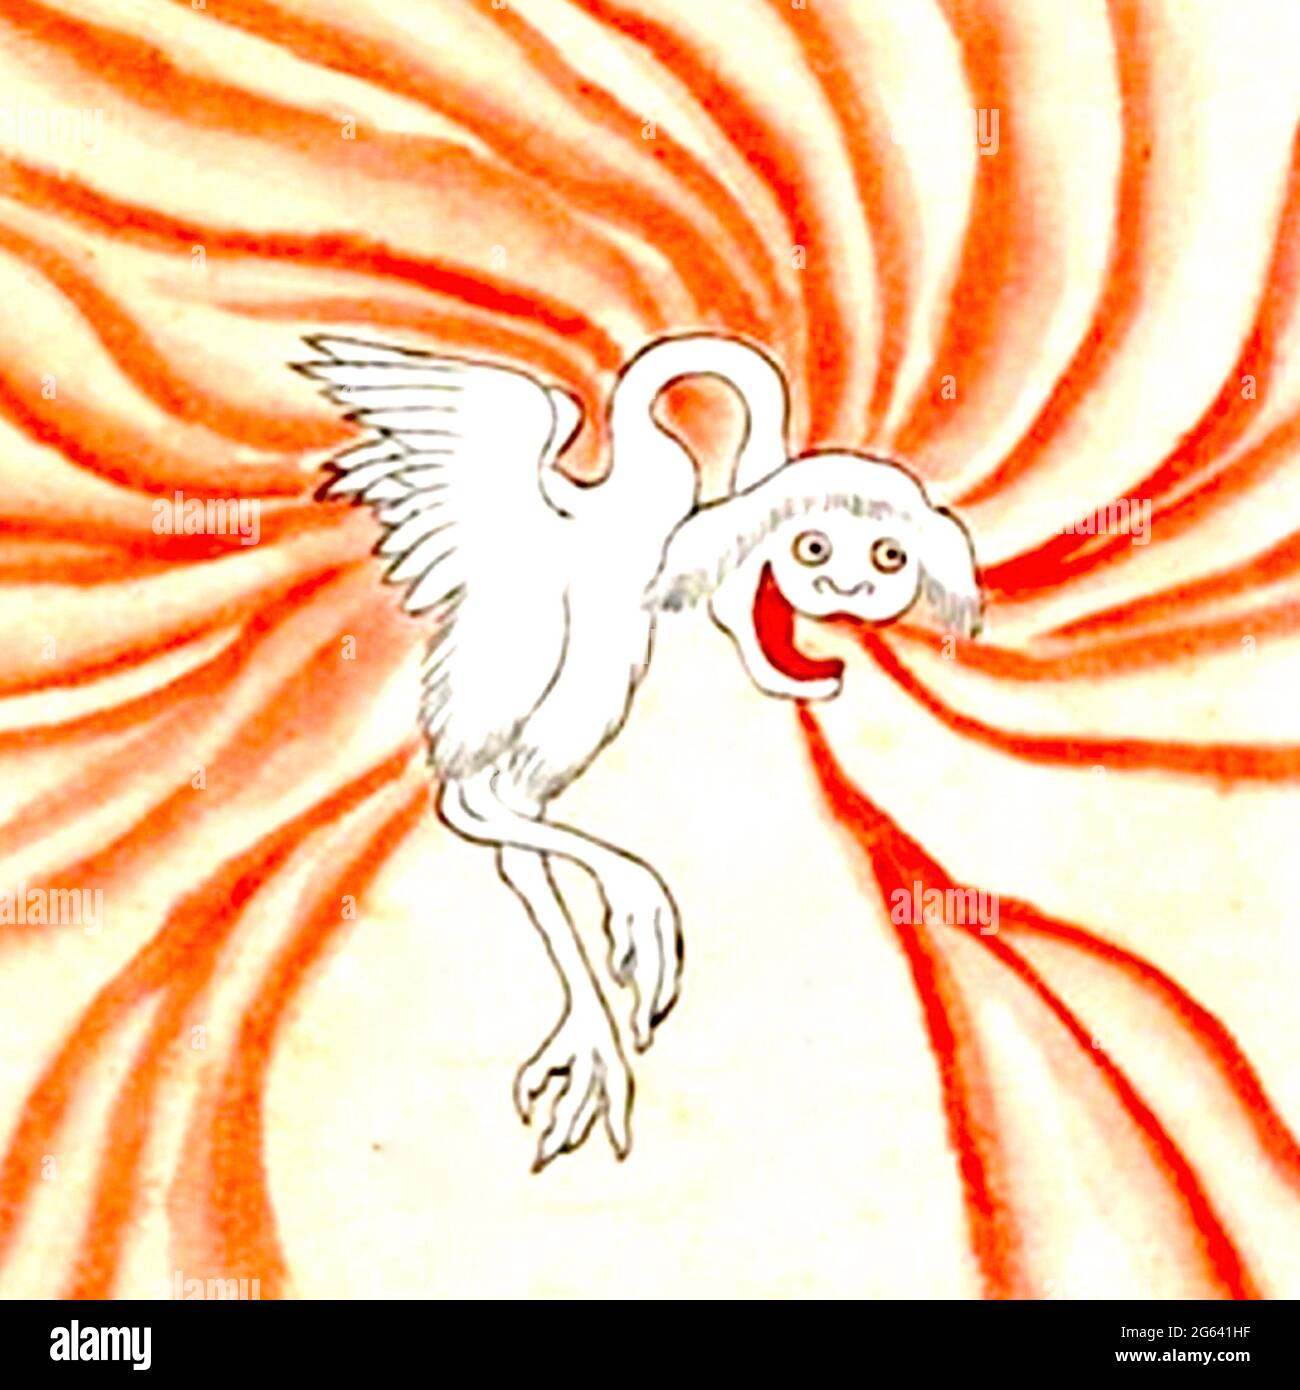 Bakemono Zukushi - Buraribi (ぶらり火) è una creatura bianca, simile ad un uccello, circondata da fiamme spettrali. Foto Stock